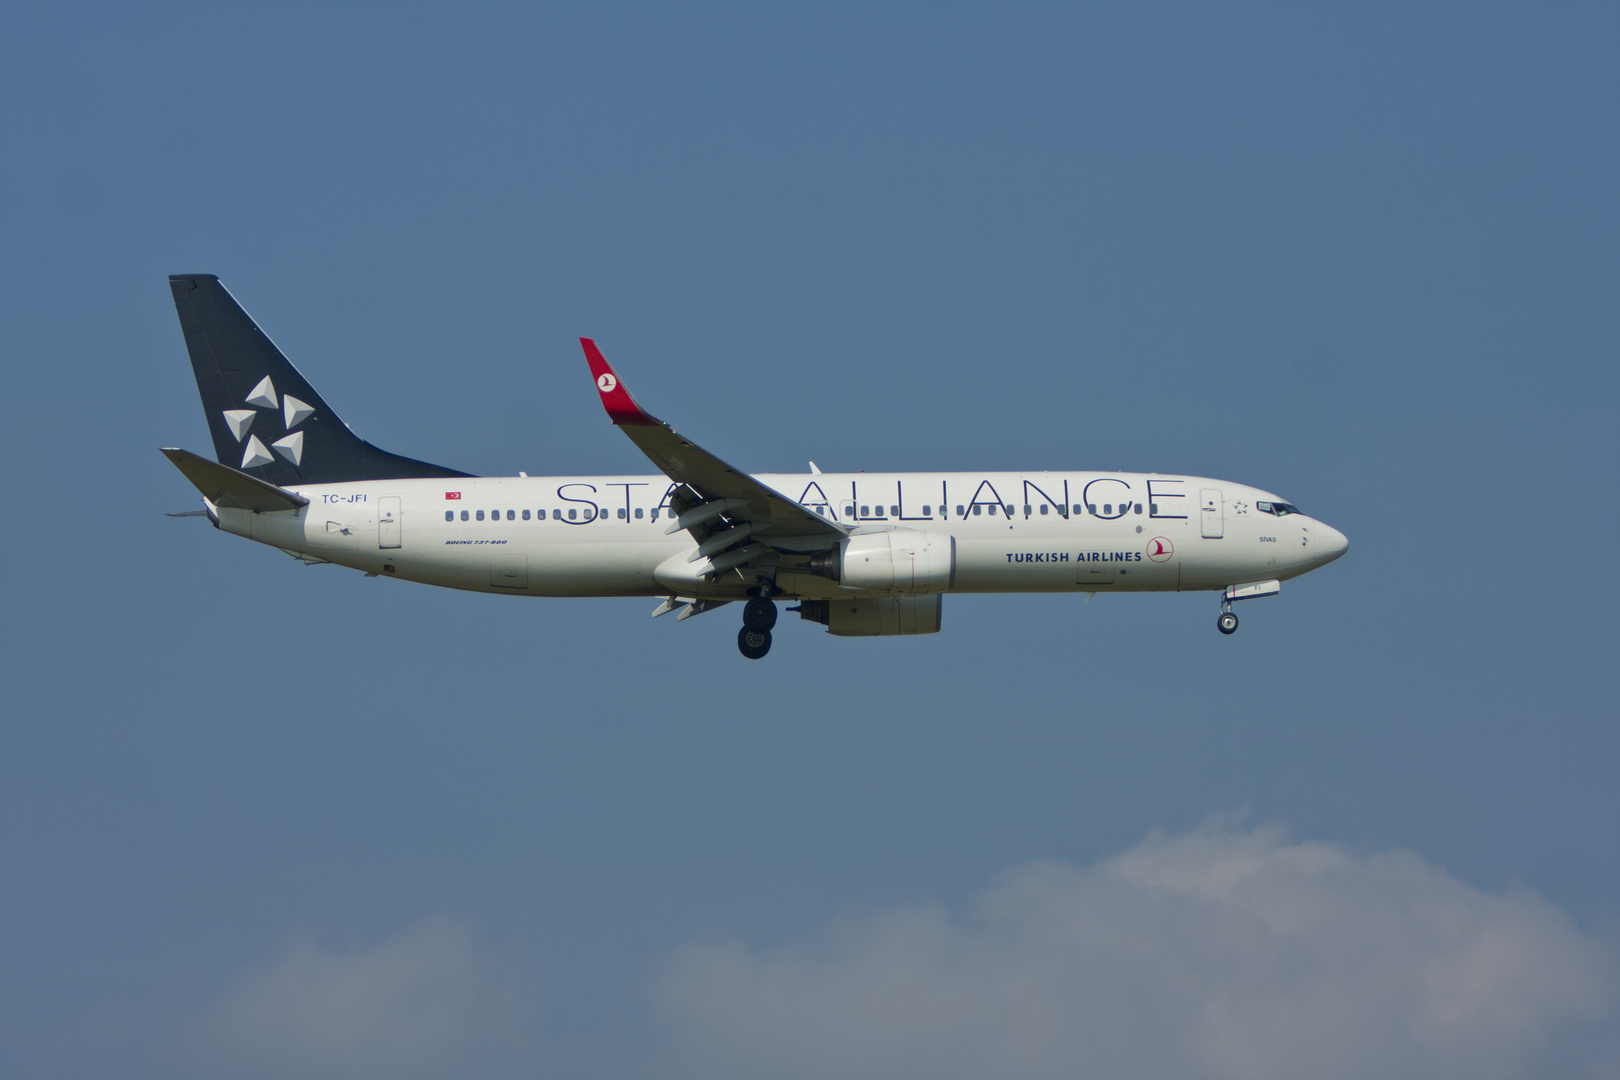 Turkish Airlines Star Alliance Boeing 737-8F2